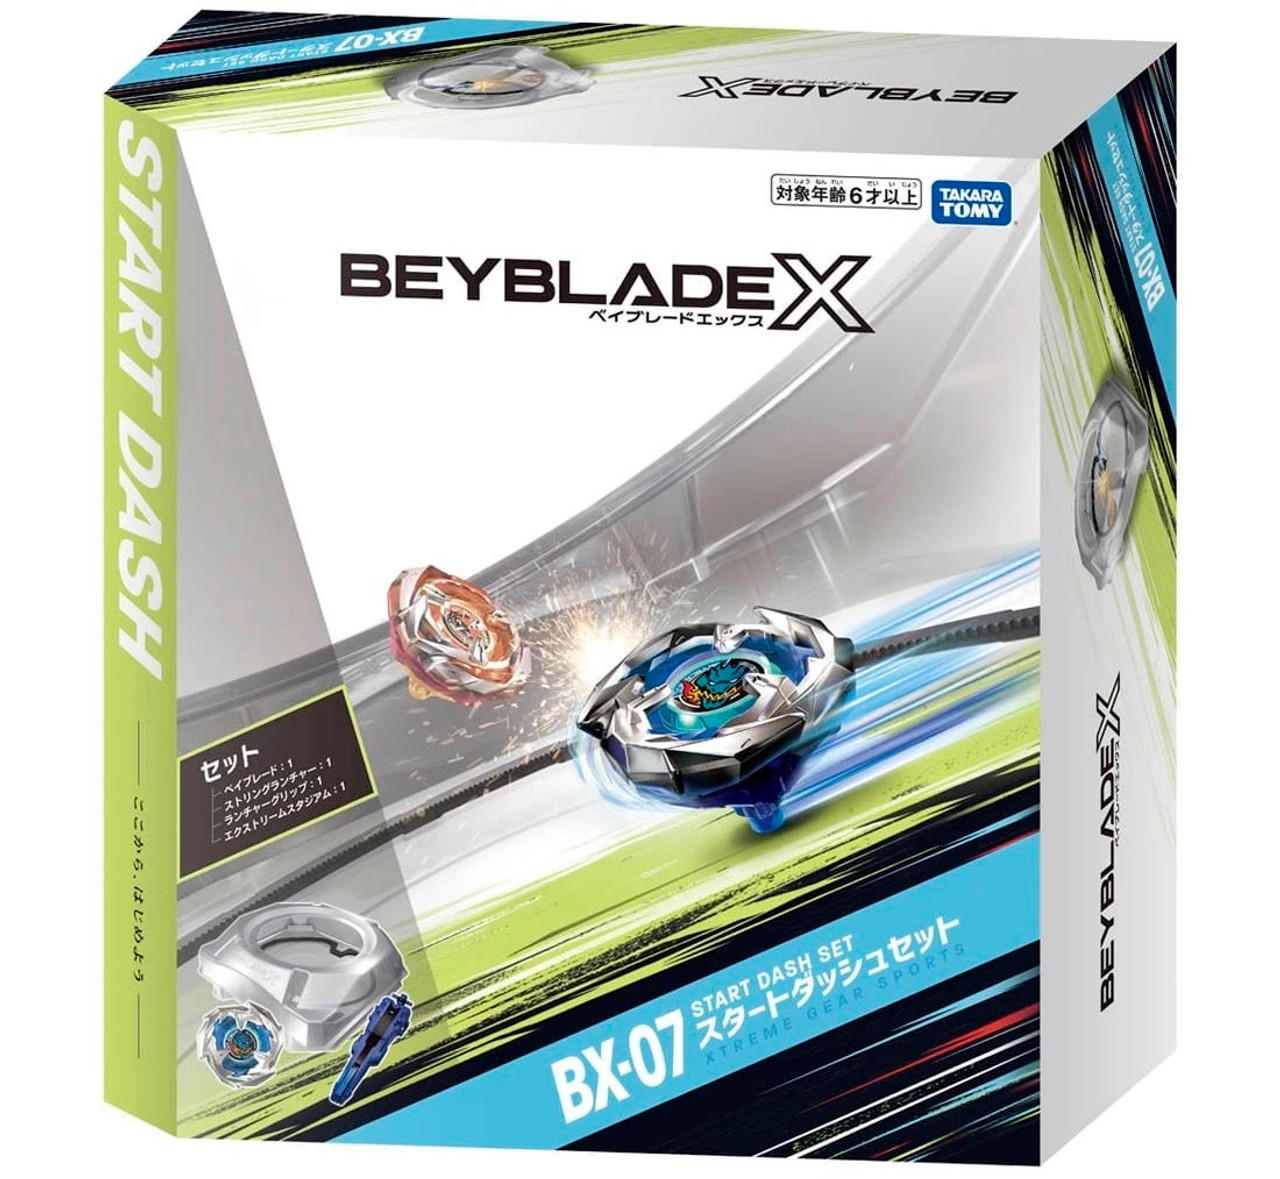 BEYBLADE X BX-17 Battle Entry Set